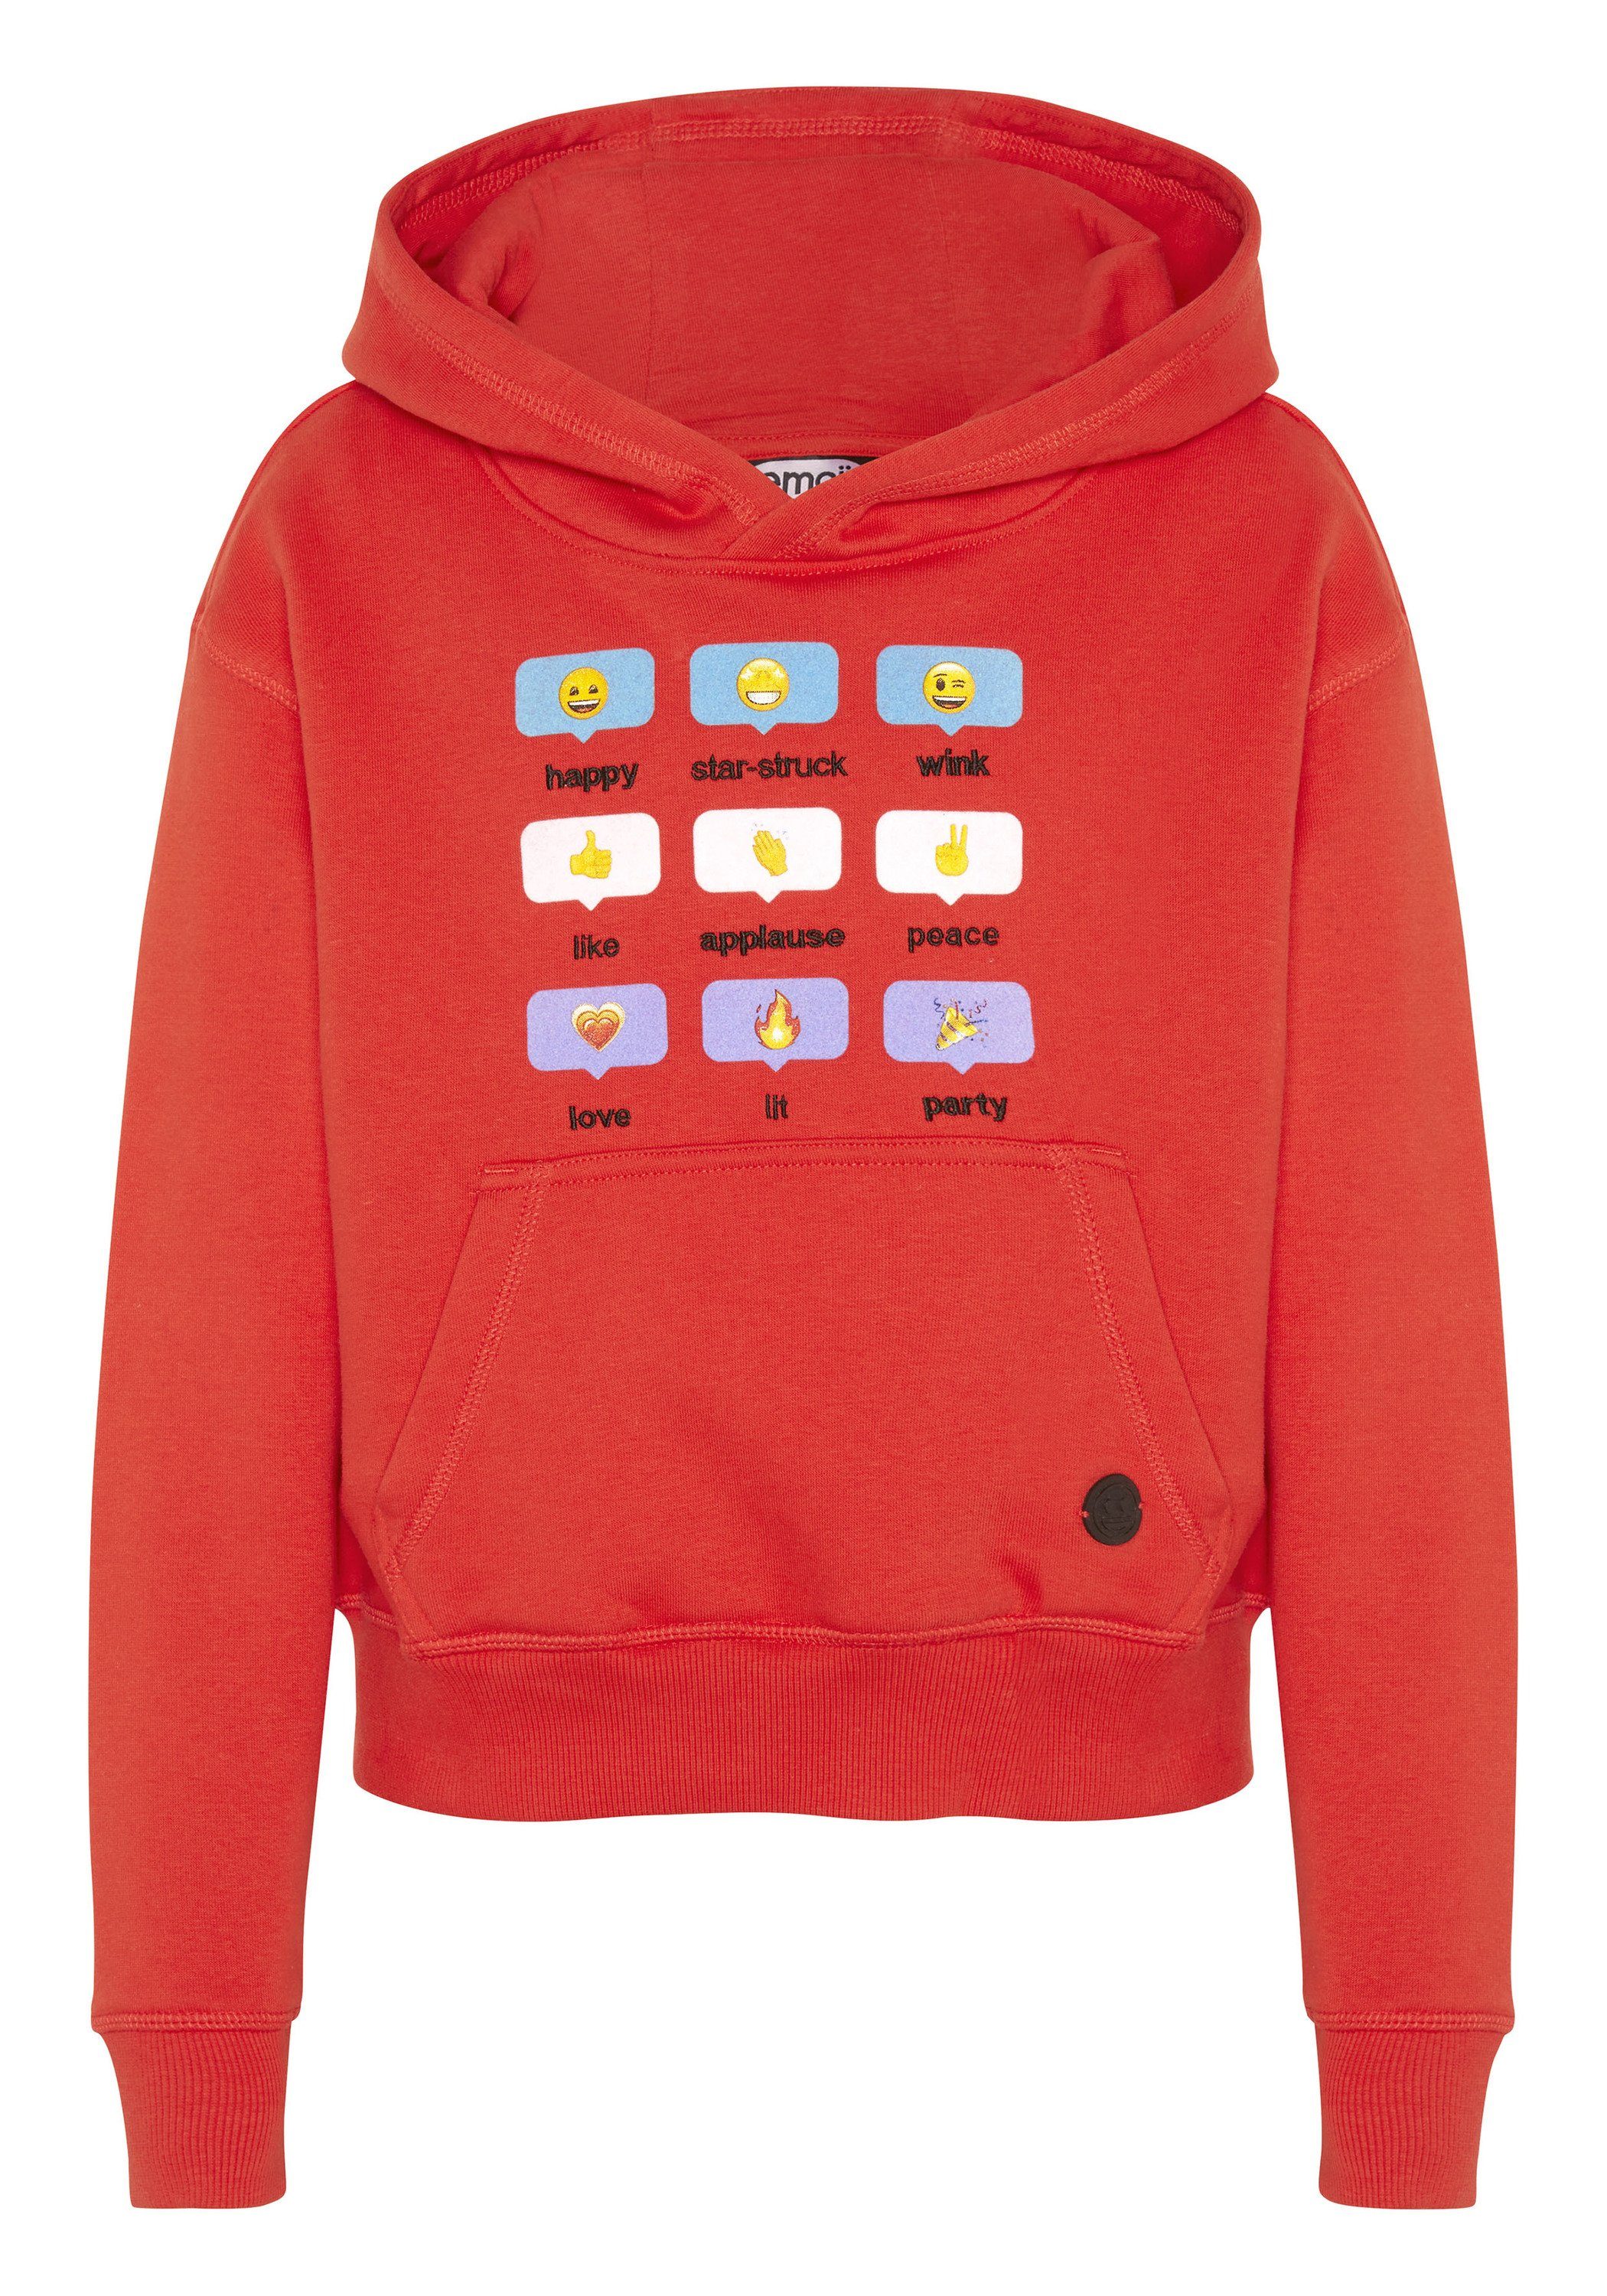 und Co mit Grinsegesicht-Motiven Emoji Sweatshirt